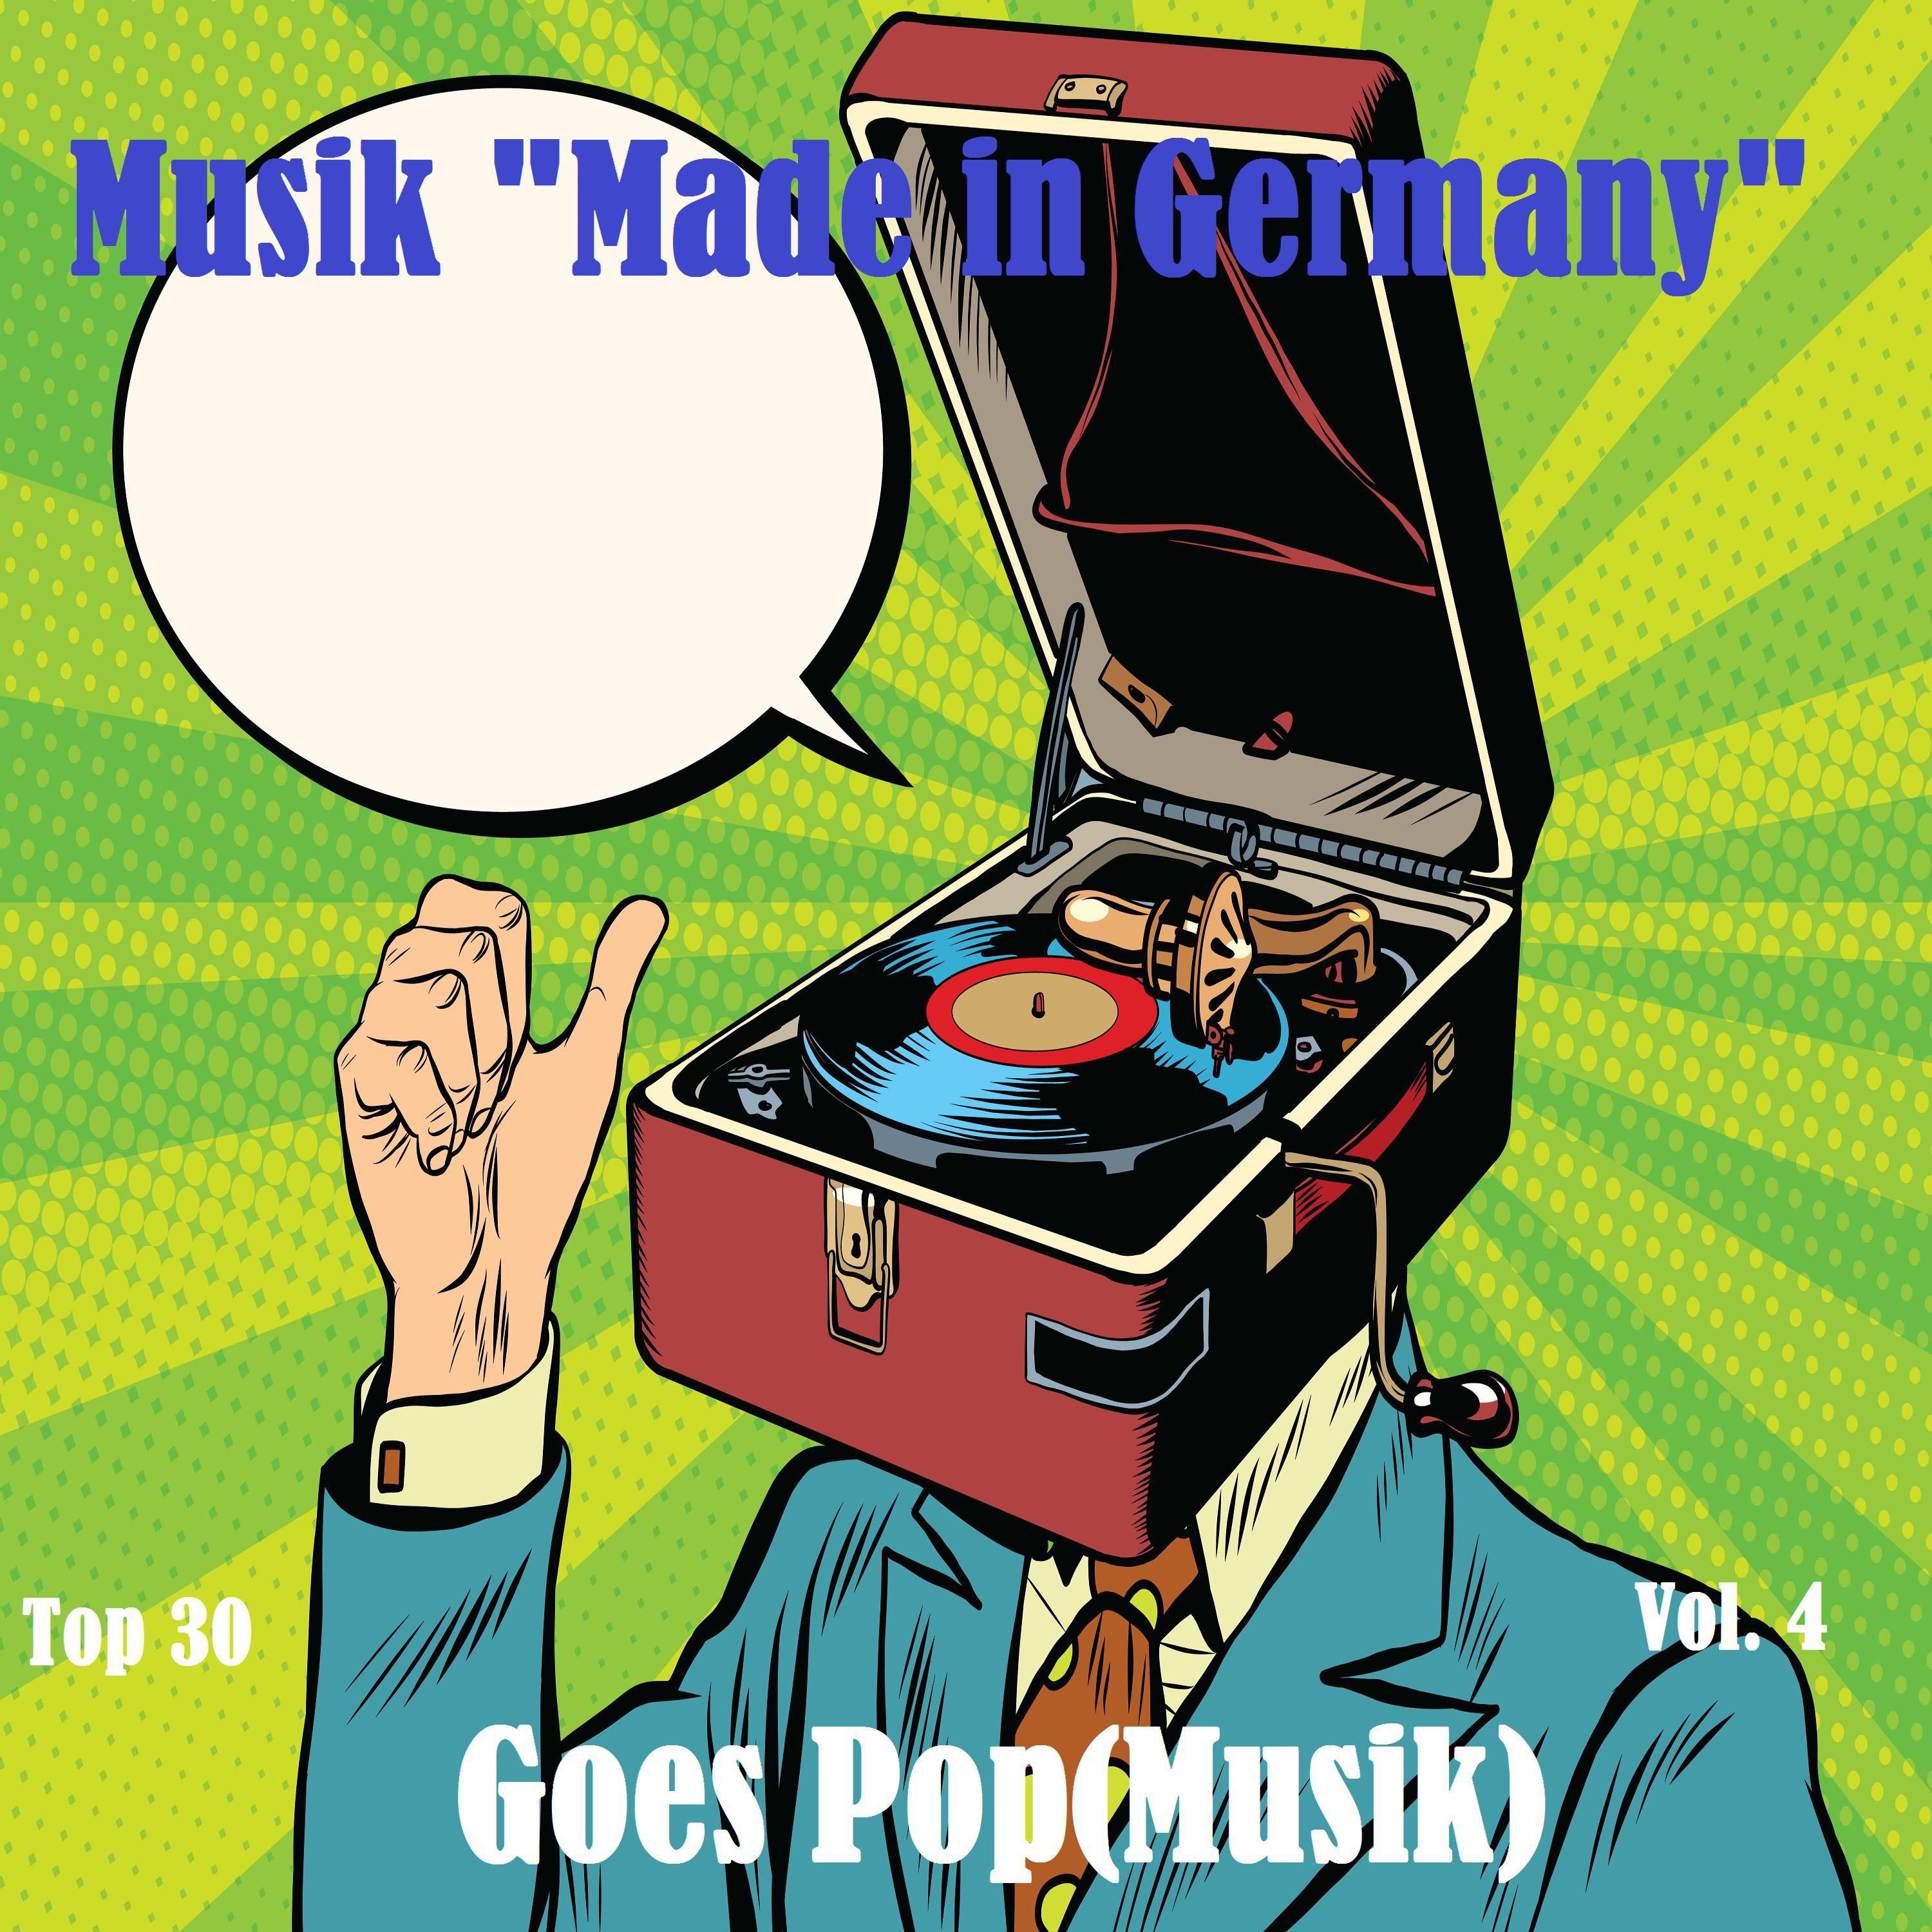 Top 30: Musik "Made In Germany" Goes Pop(Musik), Vol. 4